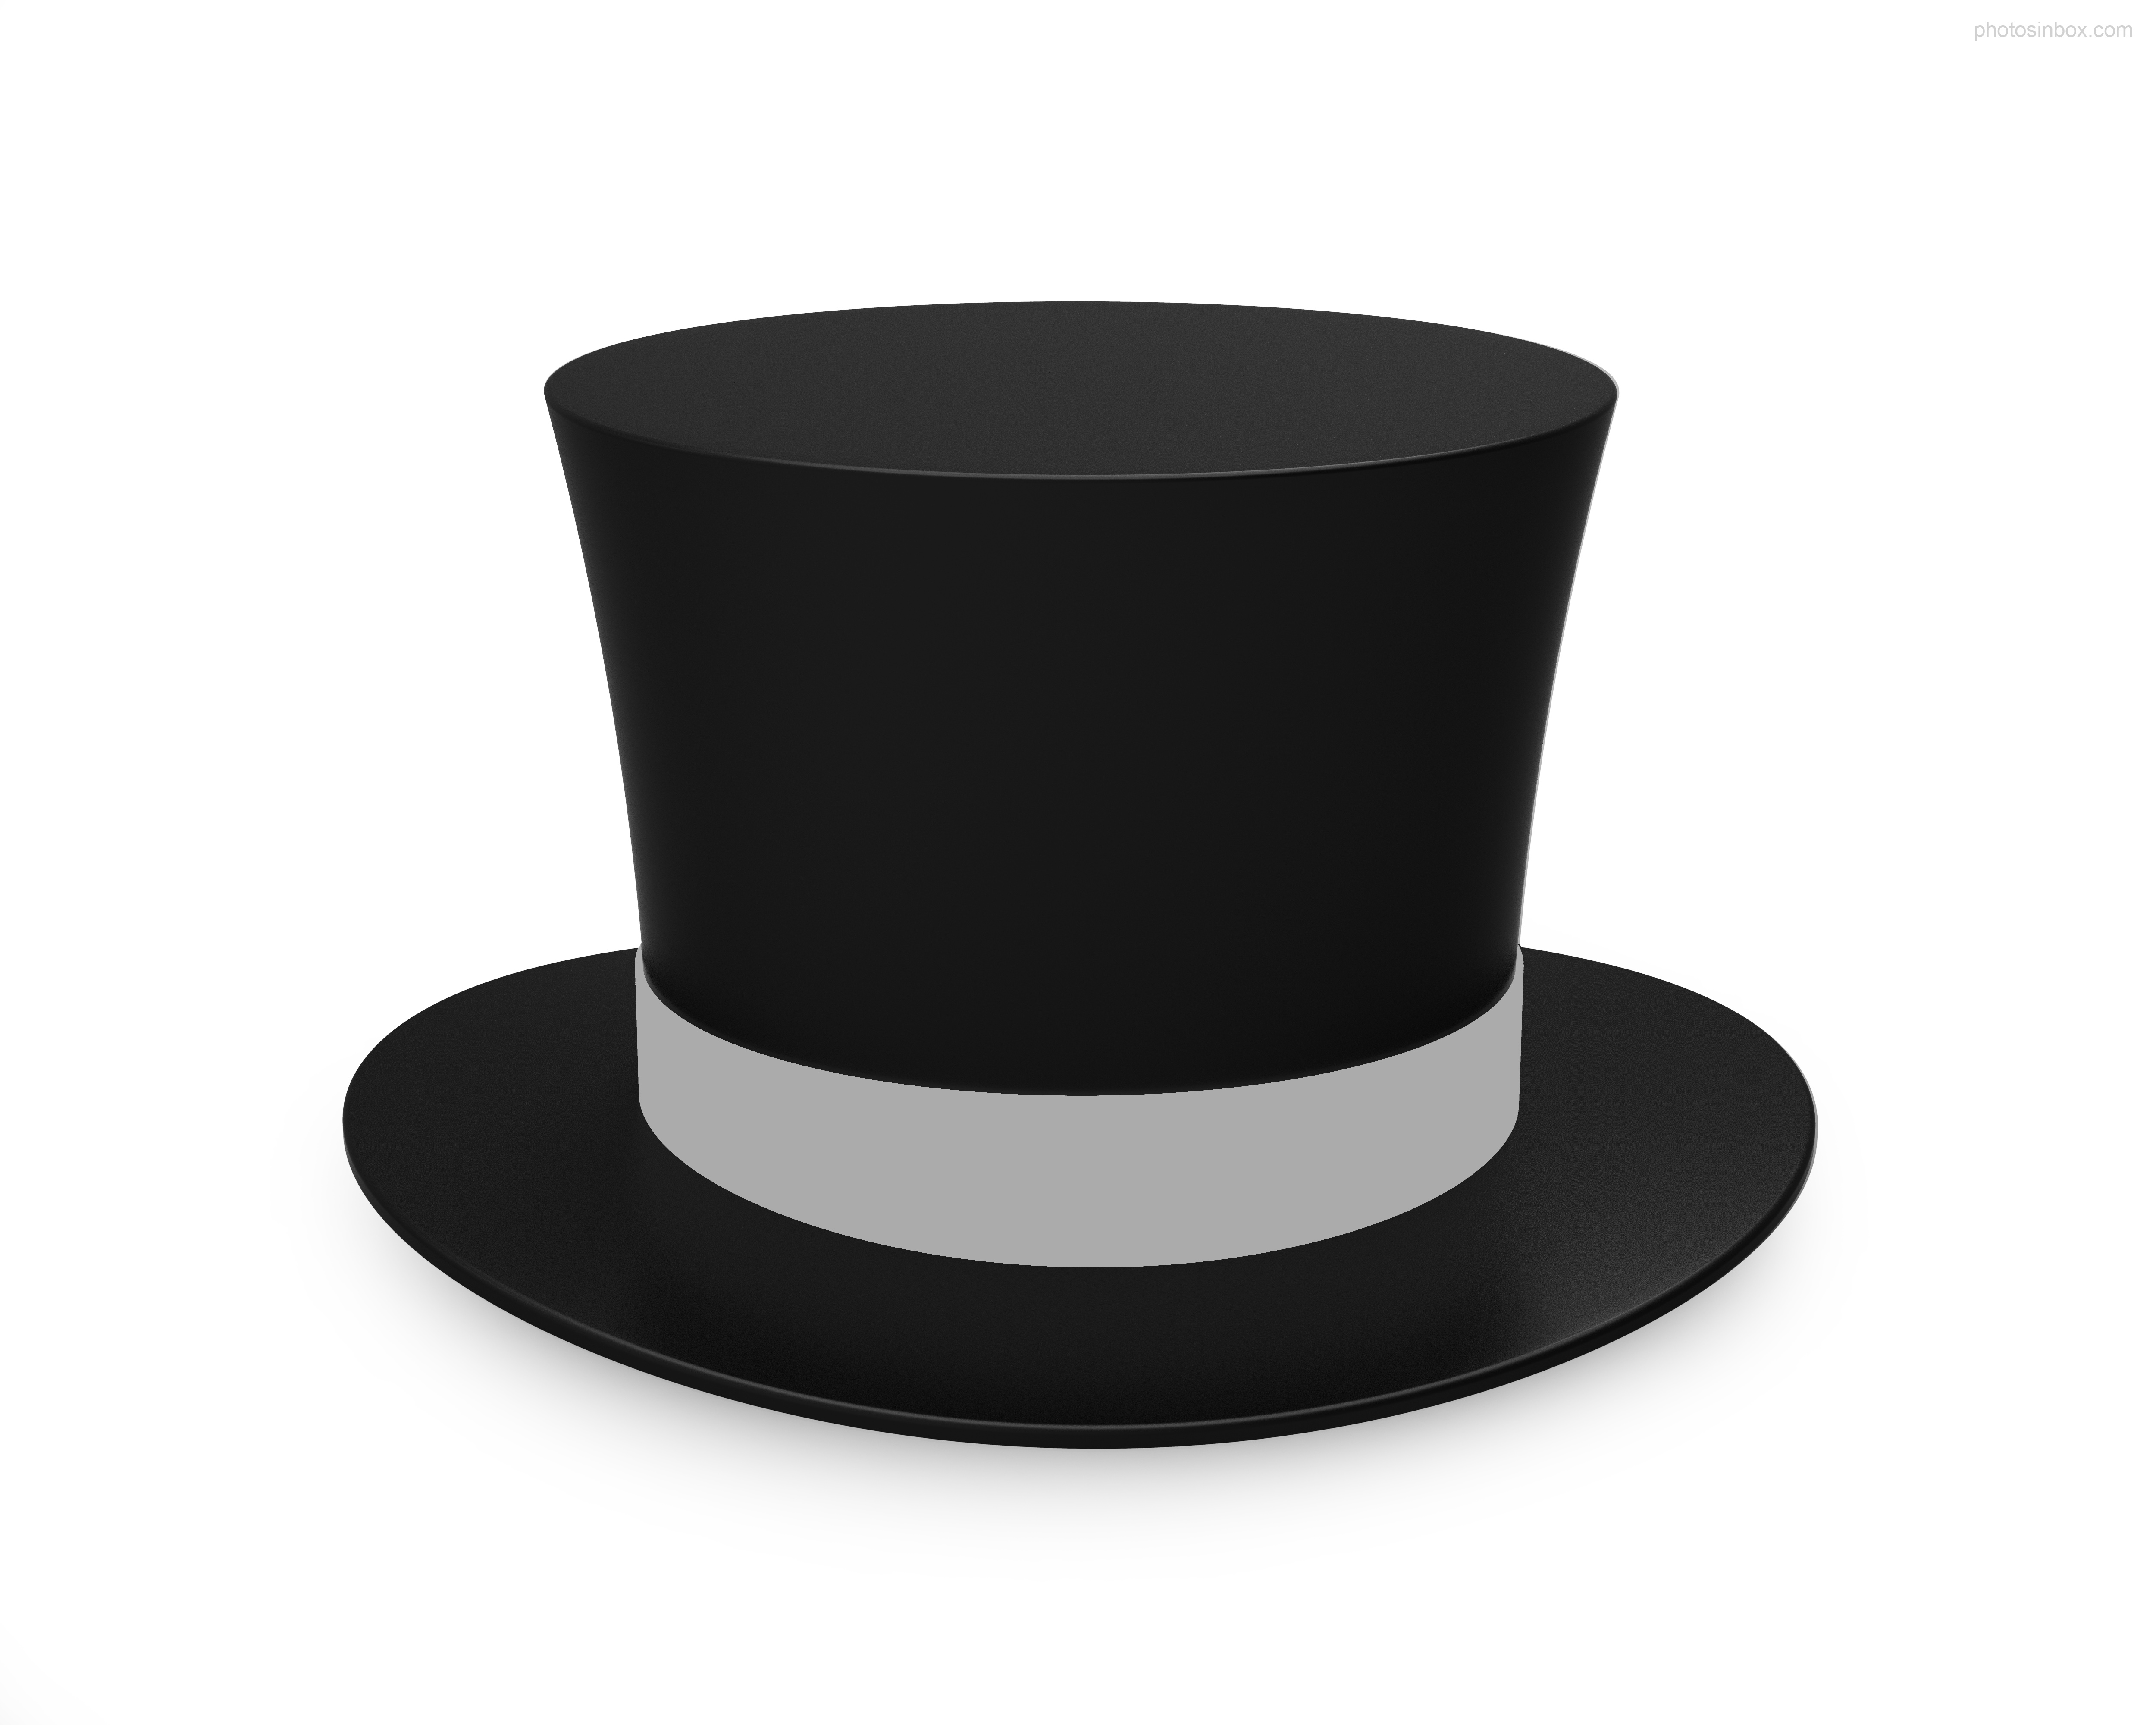 Top Hat Photosinbox - Top Hat Clipart